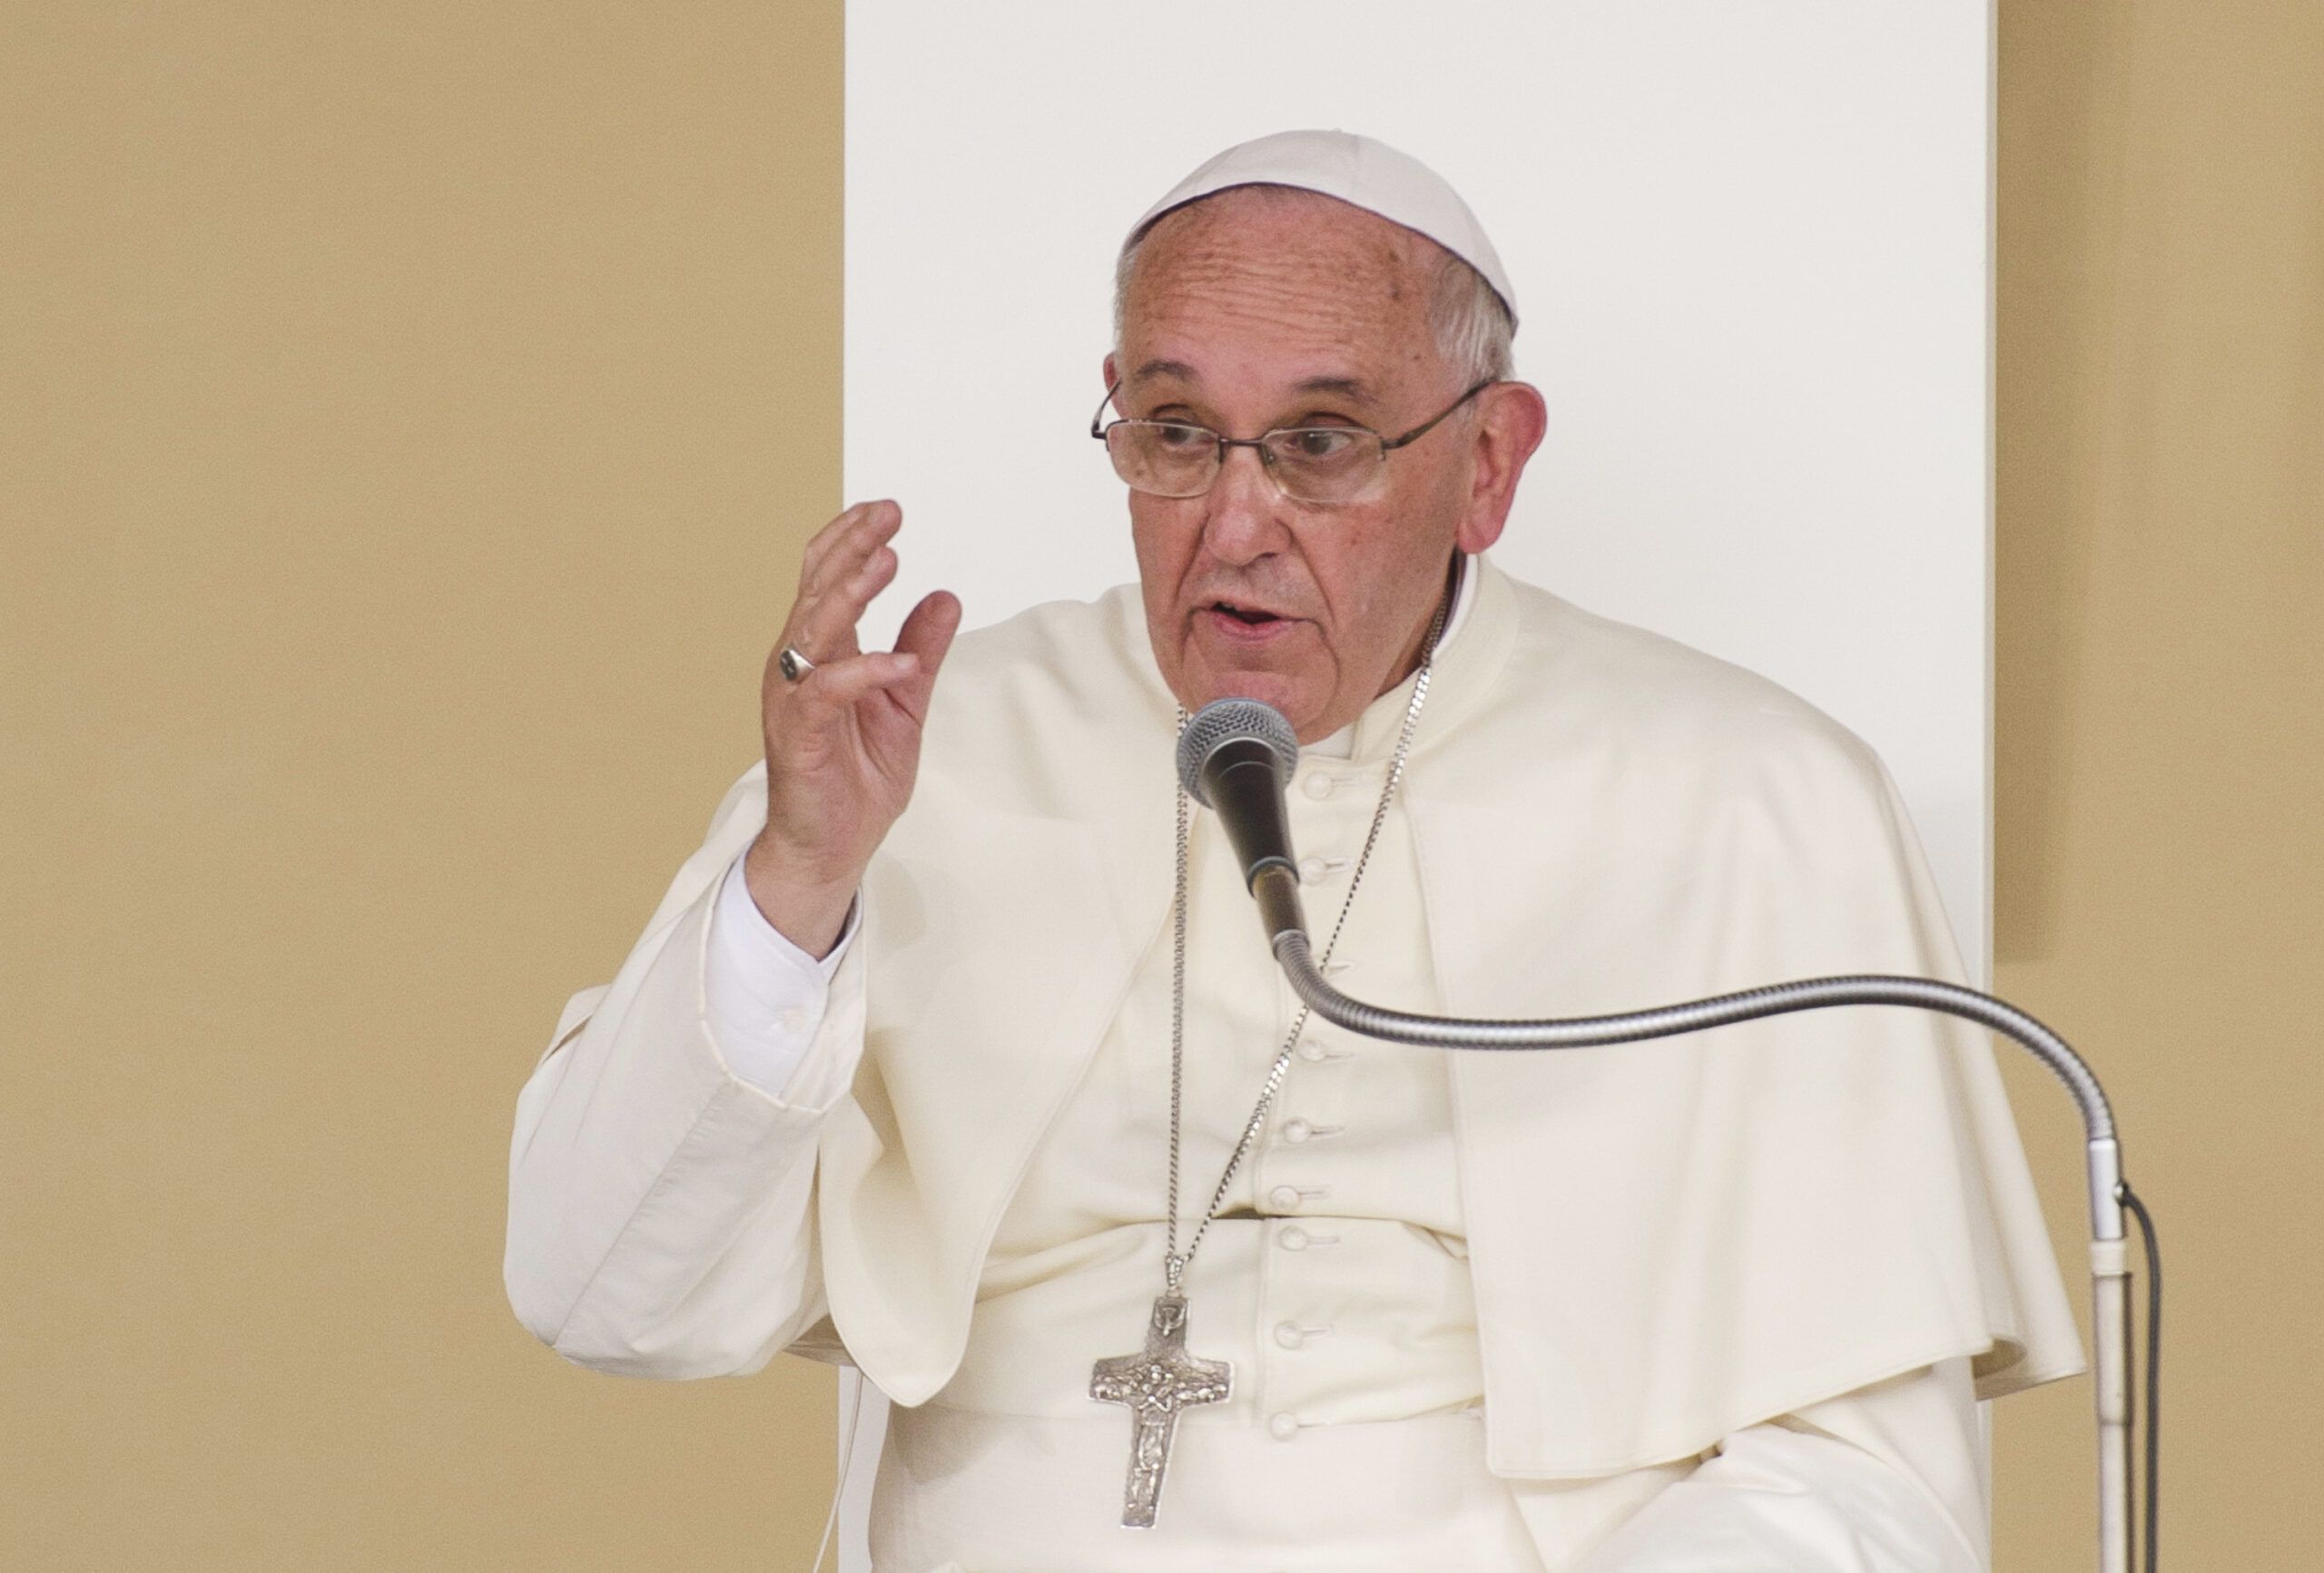 "Homoseksuele relaties kunnen niet gezegend worden", vindt paus: Hilde Crevits (CD&V) voelt 'plaatsvervangende schaamte'